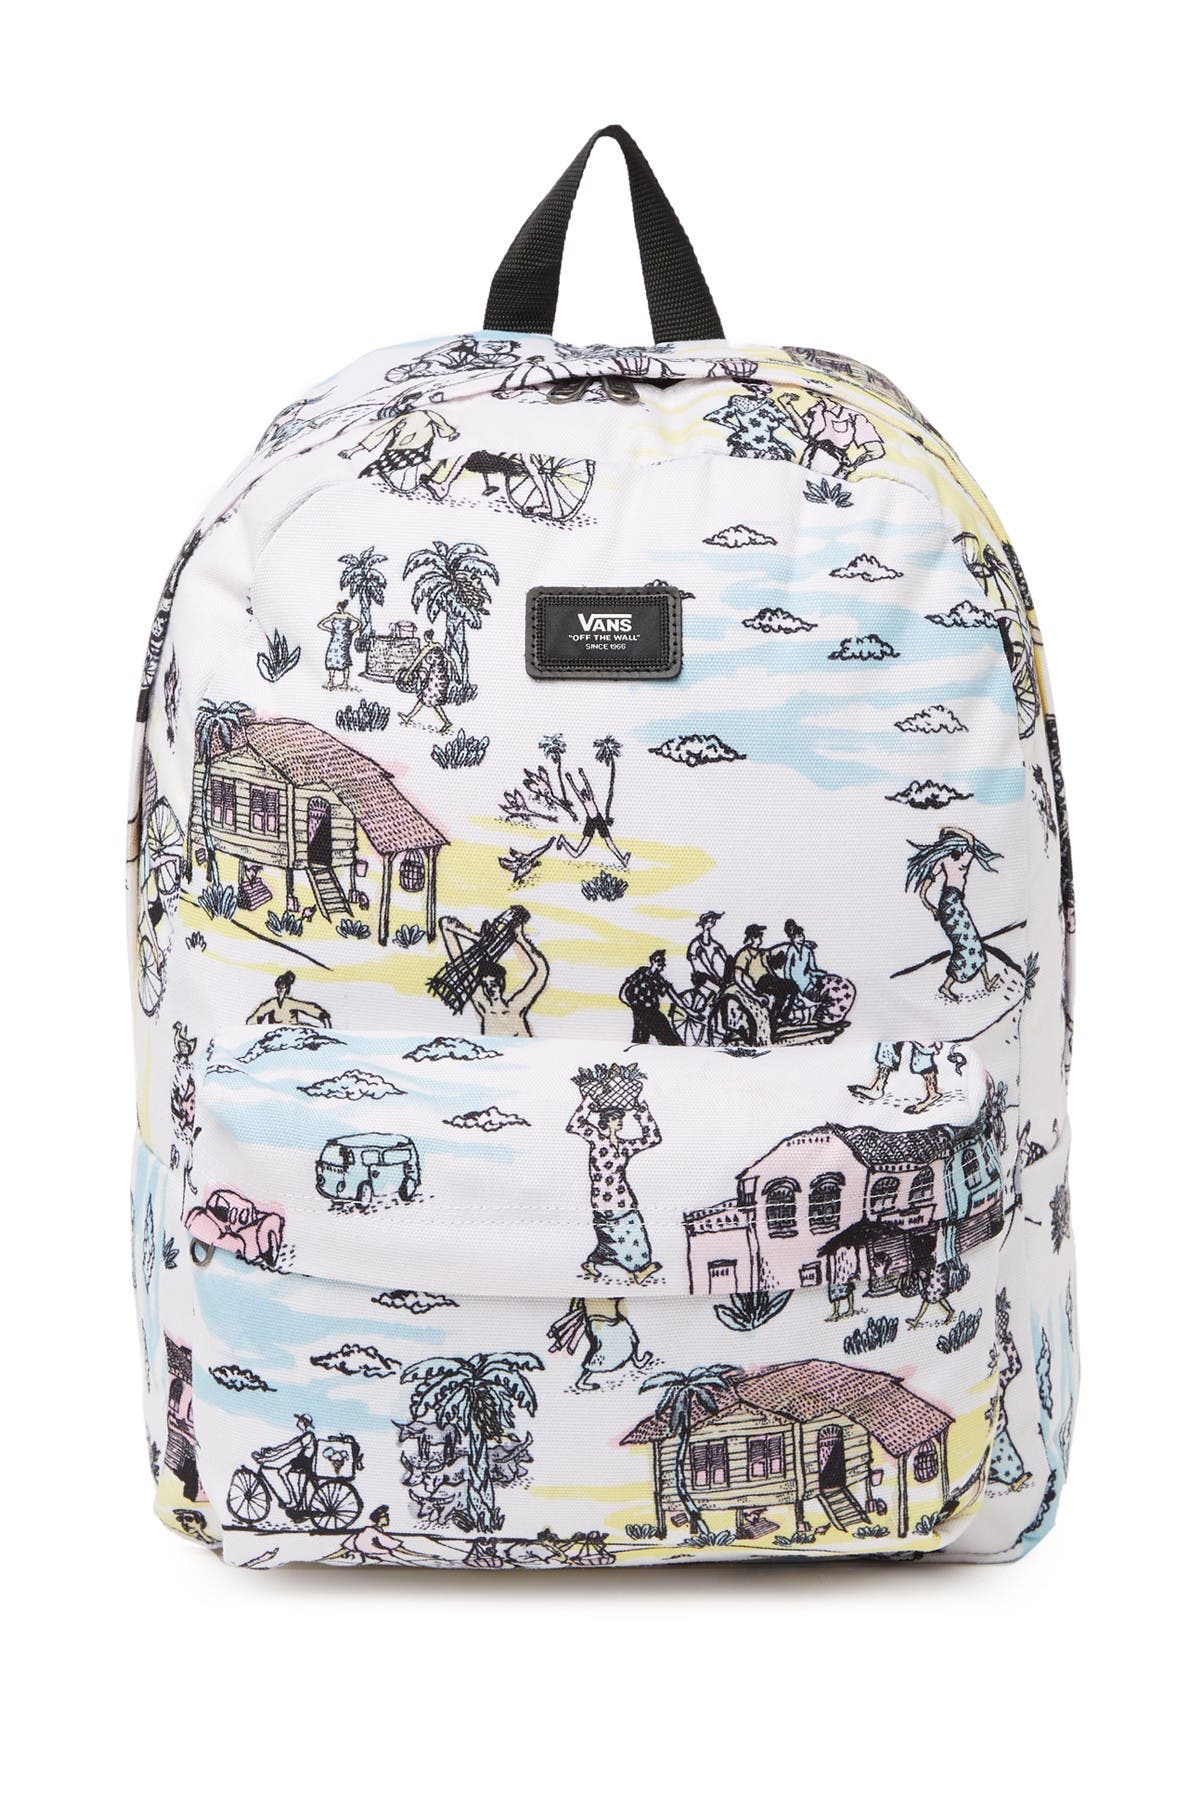 vans tropical print backpack